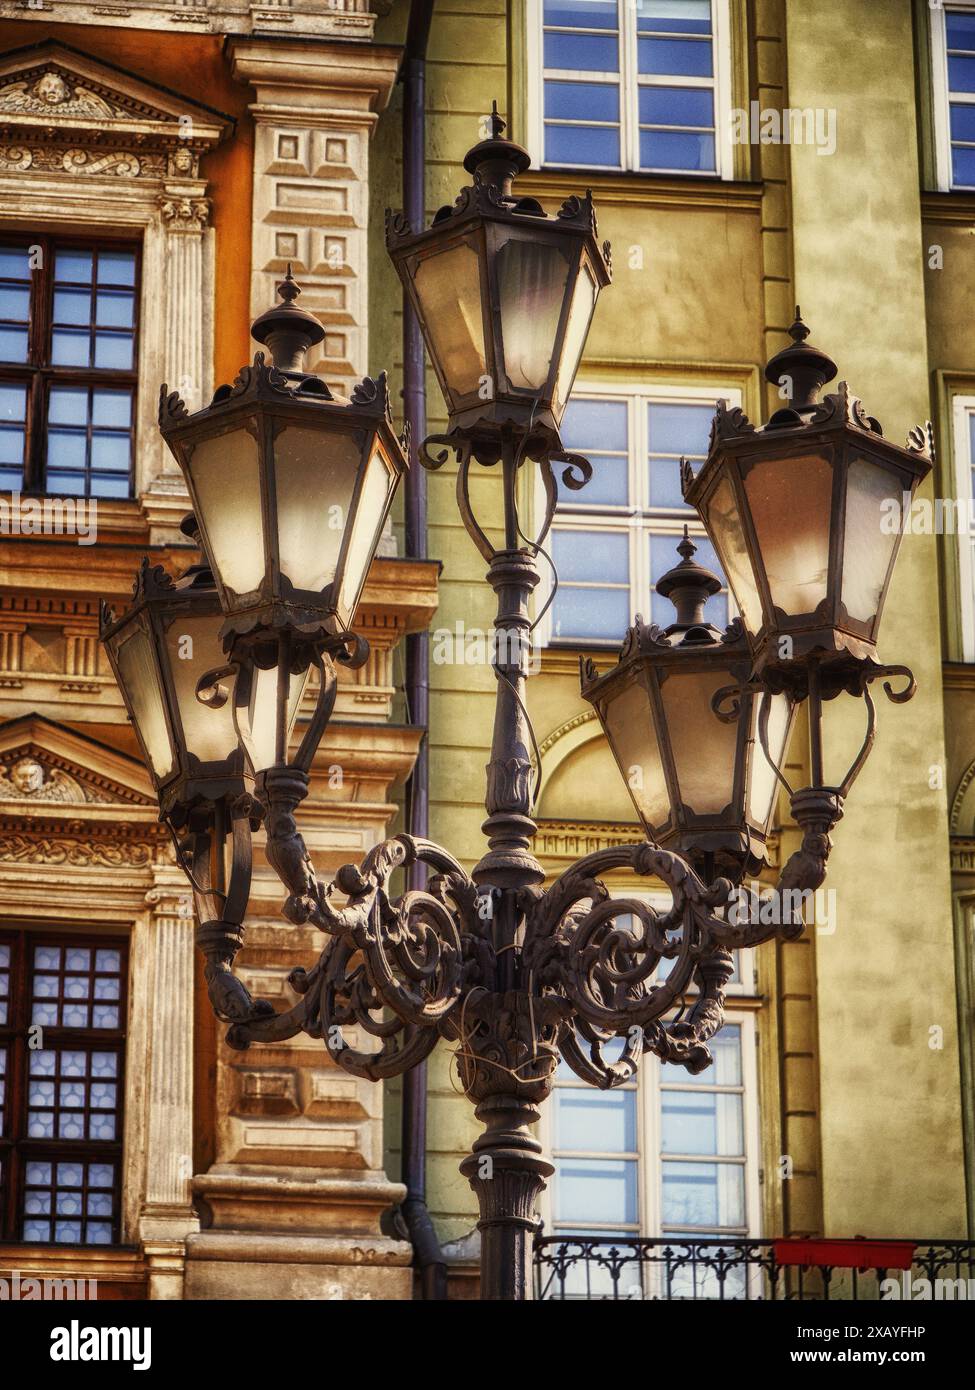 Eleganza urbana: Un lampione classico messo a fuoco contro edifici vibranti, che mette in risalto il fascino del patrimonio cittadino. Foto Stock